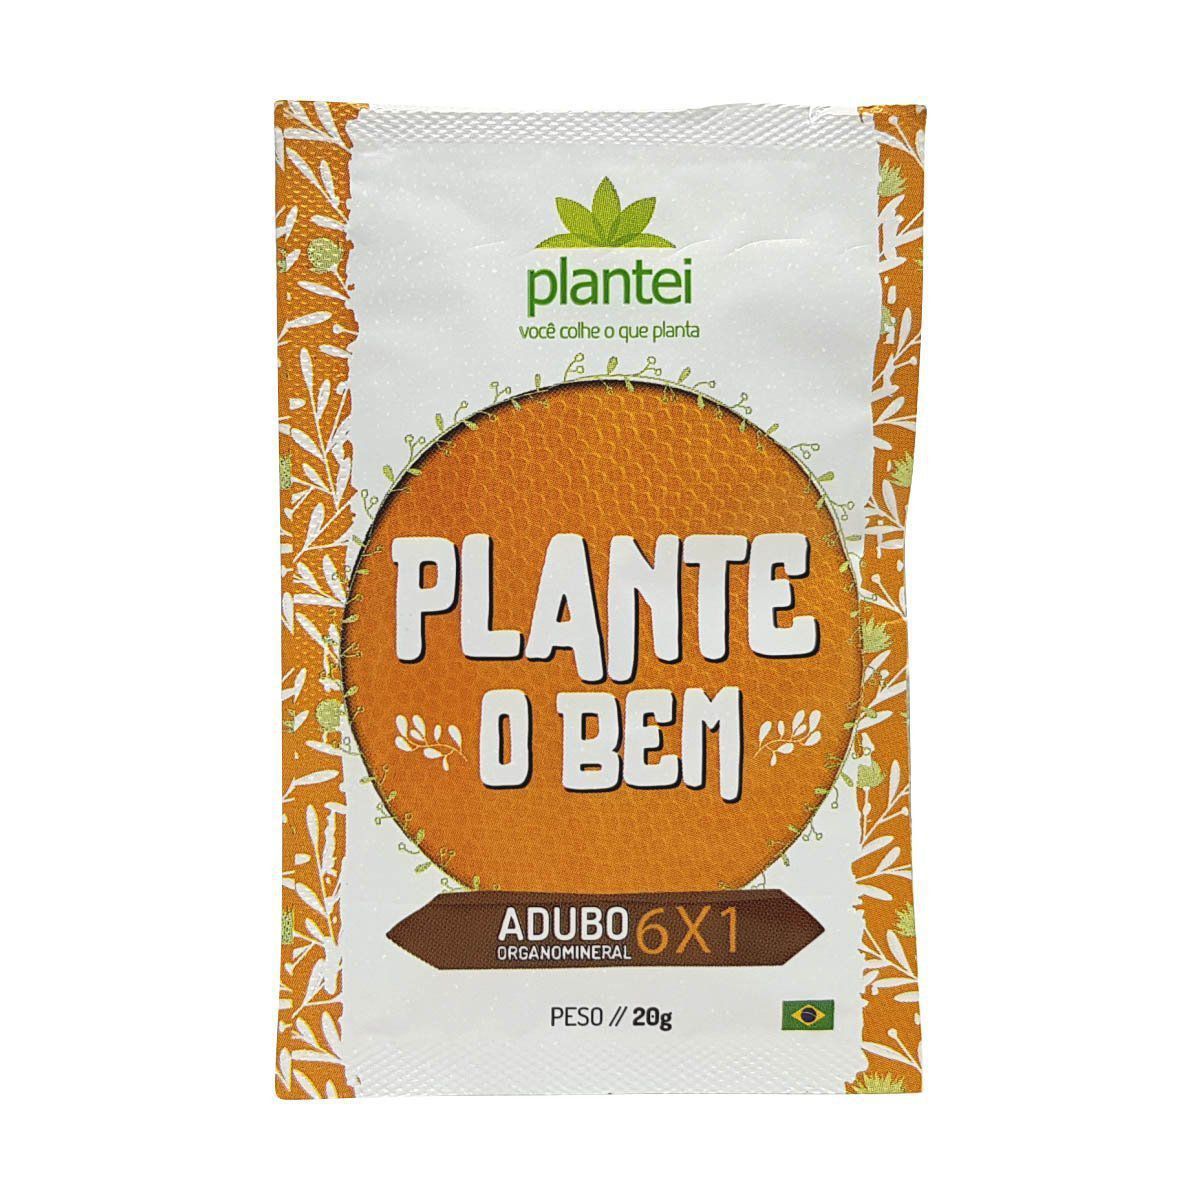 Adubo Plantei 6X1 sachê 20g - Fertilizante para todos os tipos de cultura